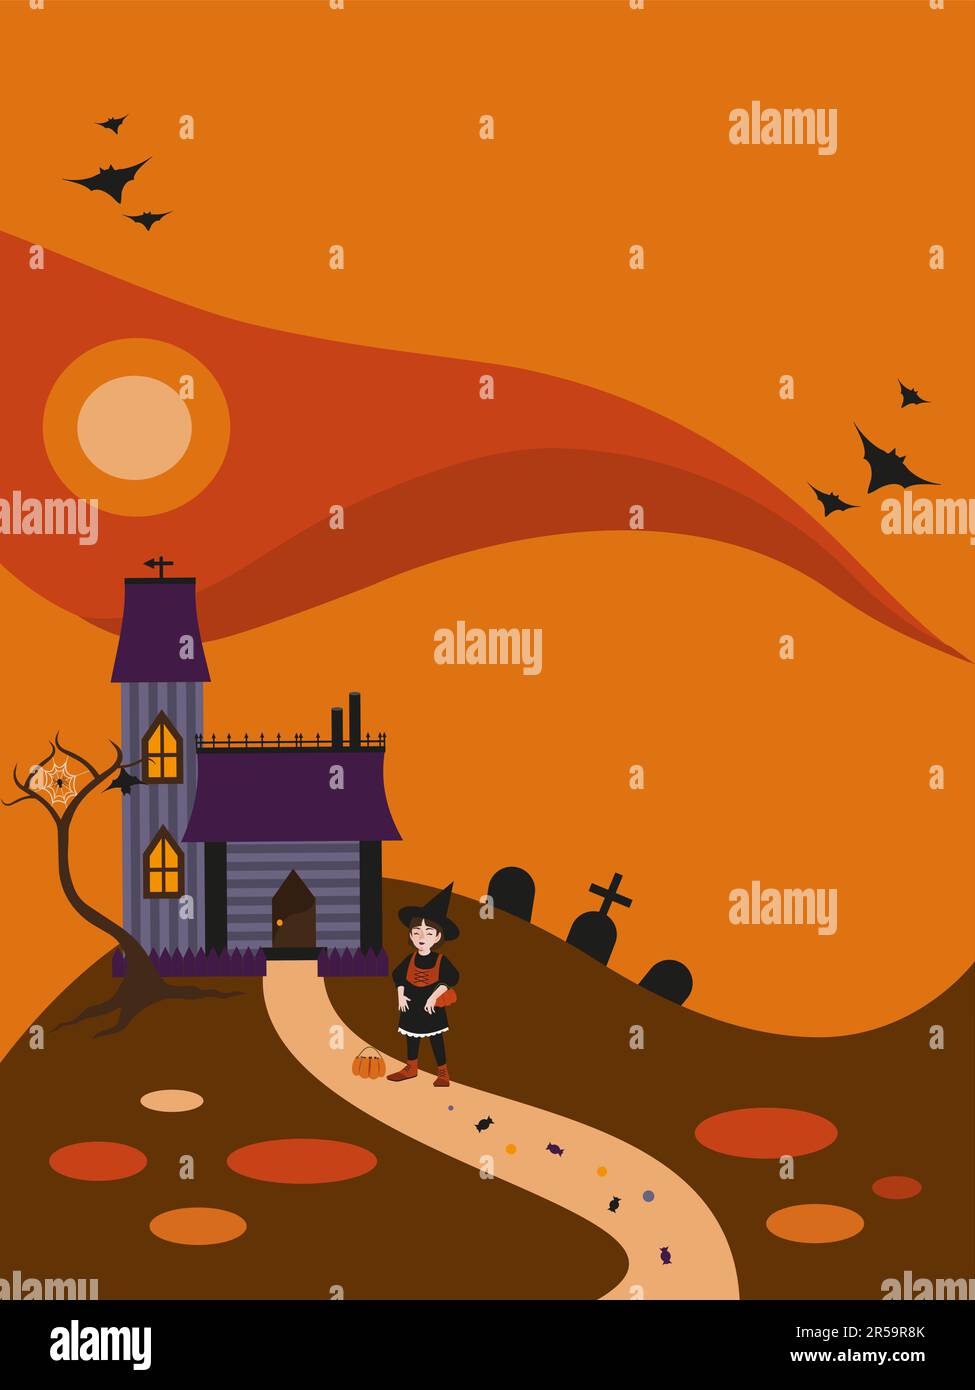 Carte de fête d'Halloween. Une jeune sorcière avec un visage aimable près de la maison, cimetière et un arbre avec toile, chauves-souris volant dans le ciel. Bonbons sur une route. Illustration de Vecteur